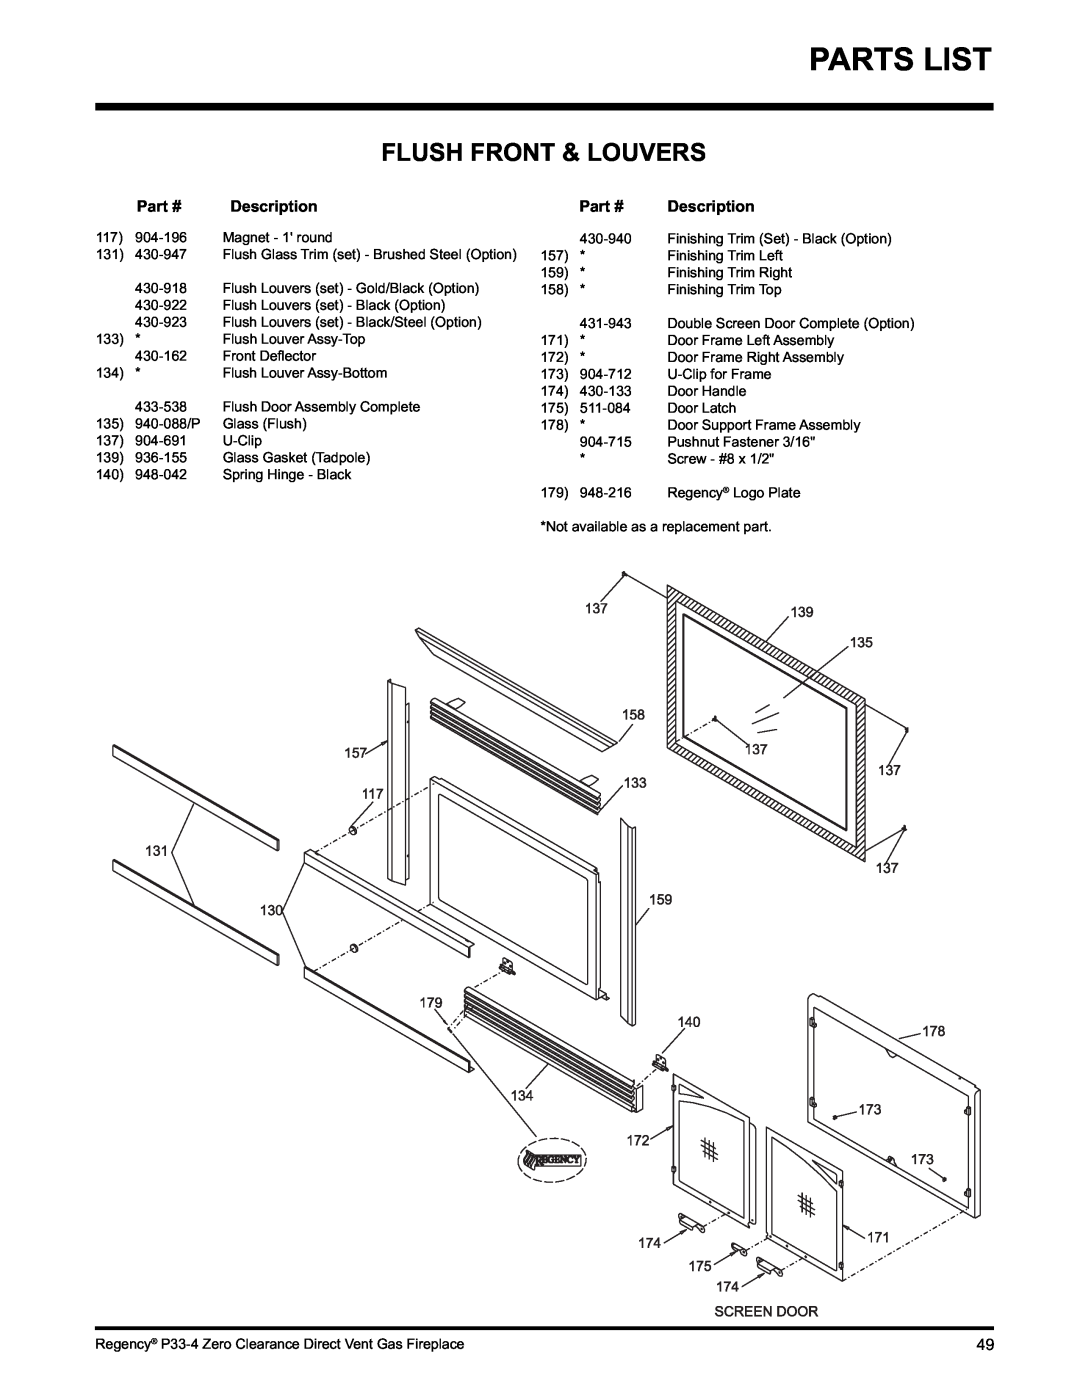 Regency P33-LP4 installation manual Parts List, Flush Front & Louvers 